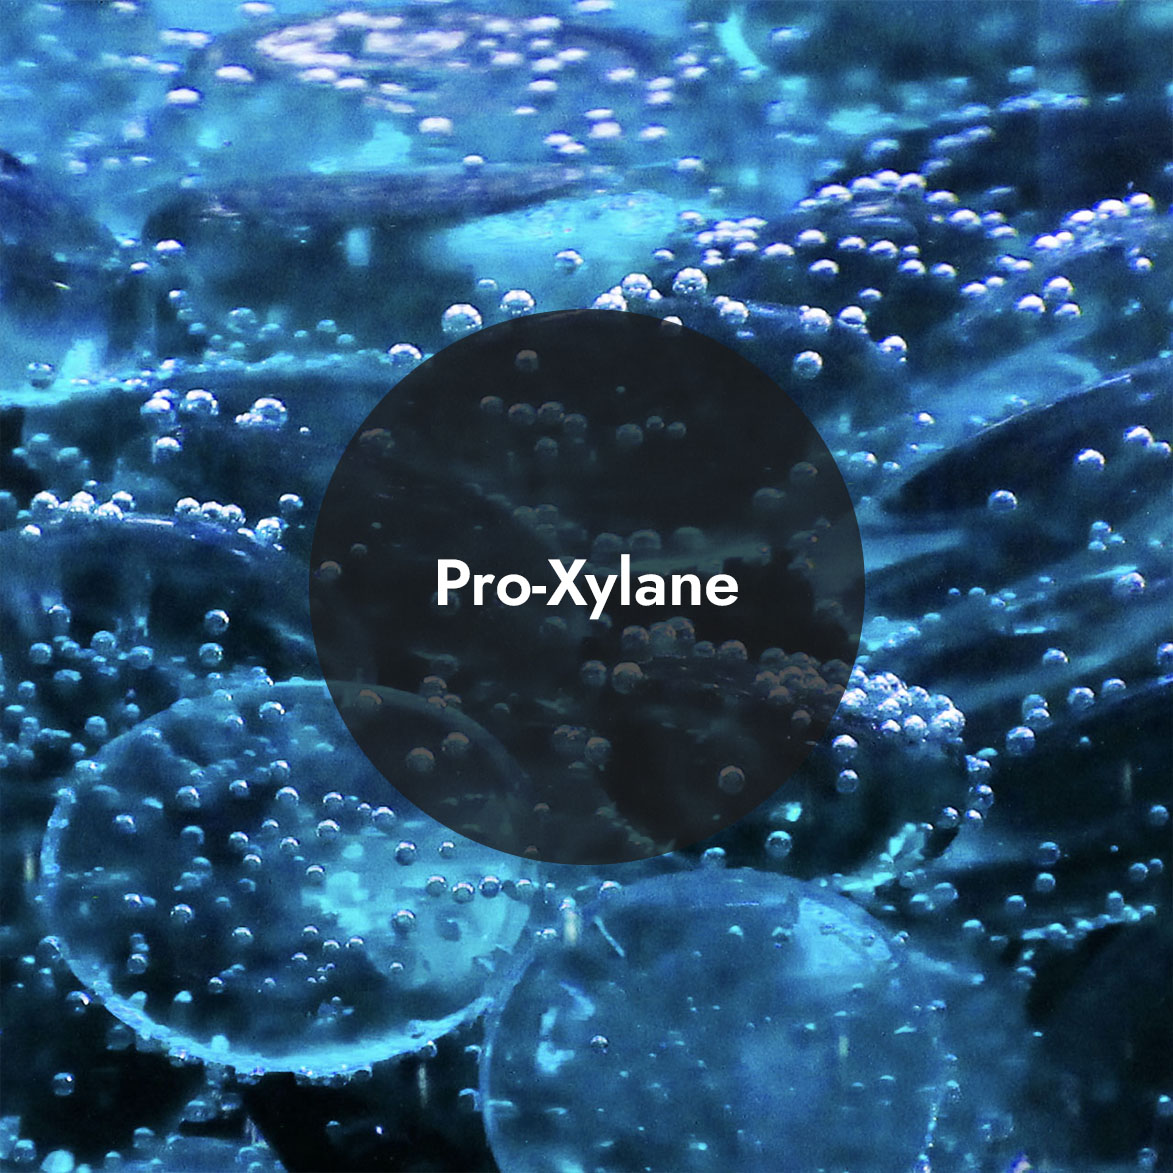 Pro-Xylane